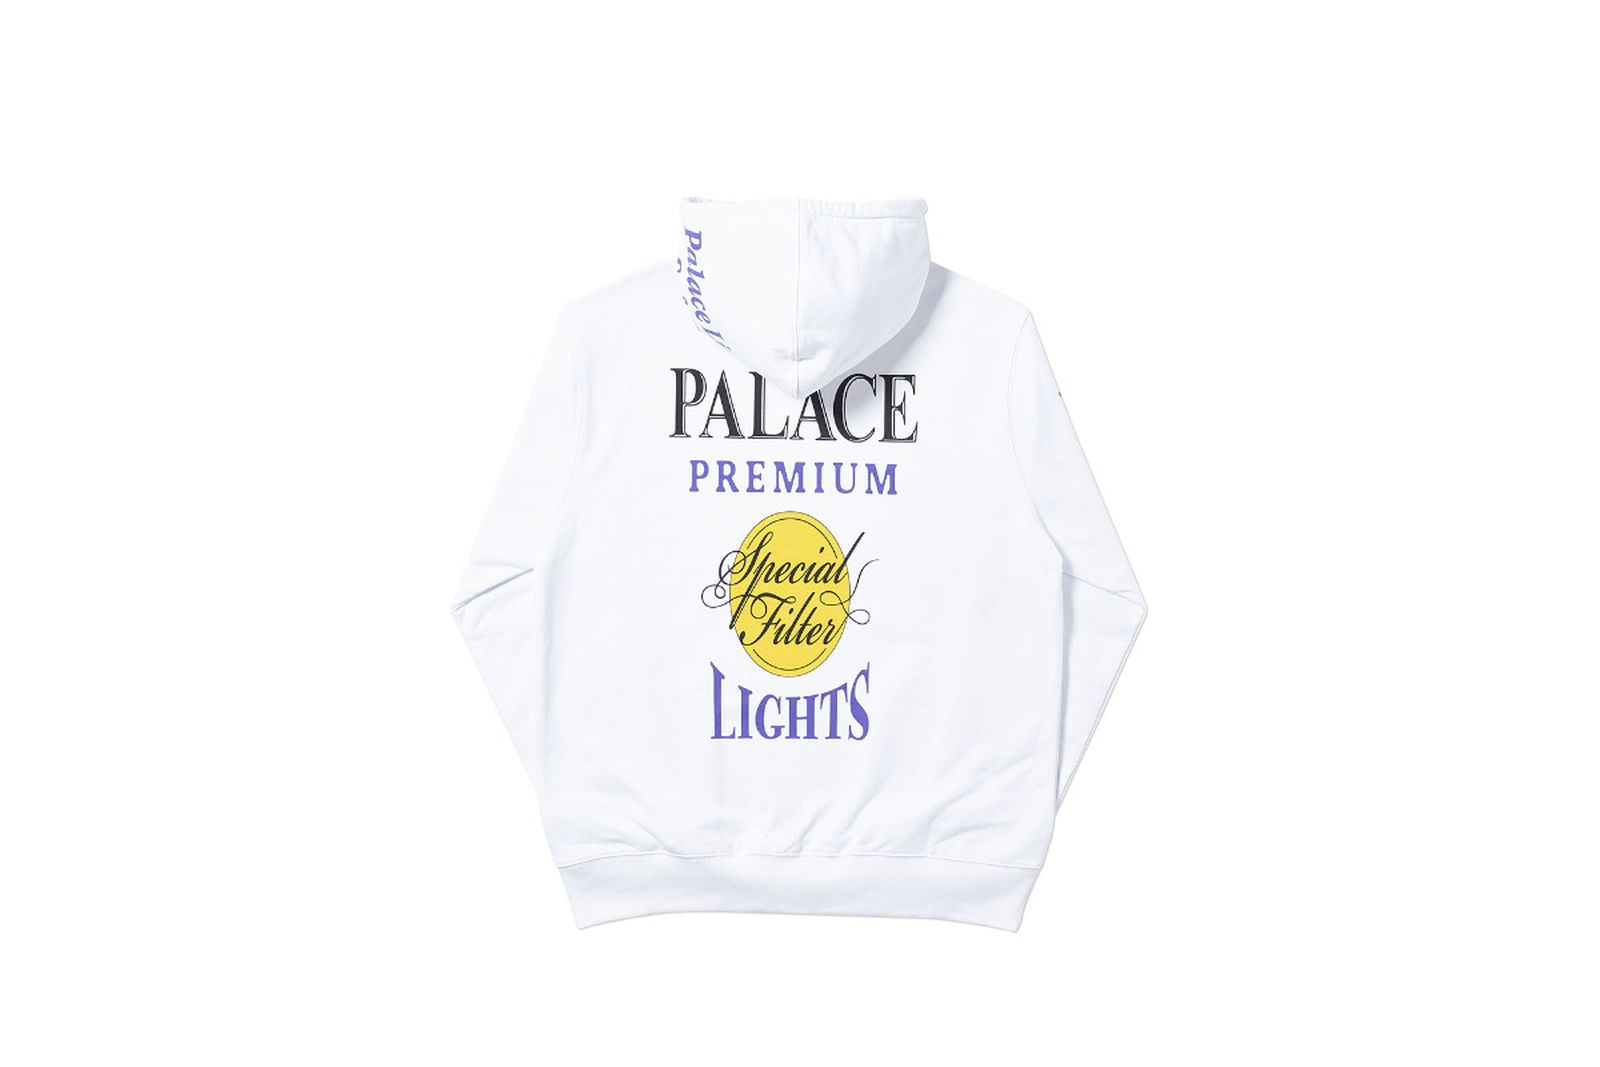 Palace 2019 Autumn Hood Blender white back